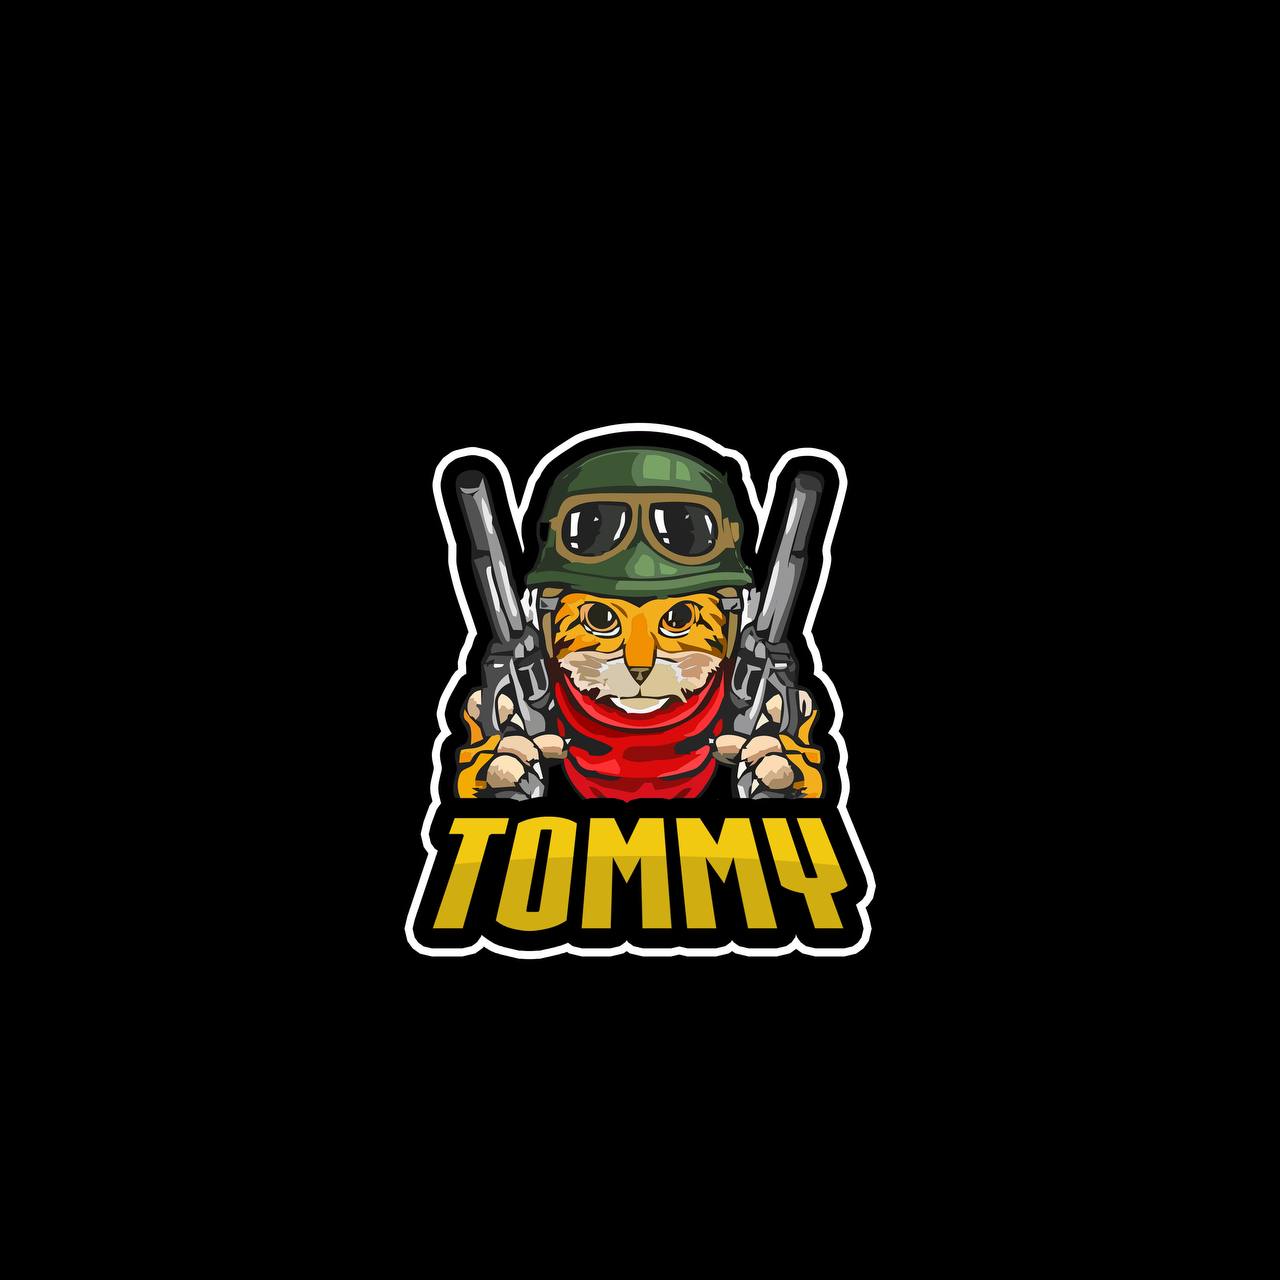 Tommy cat logo